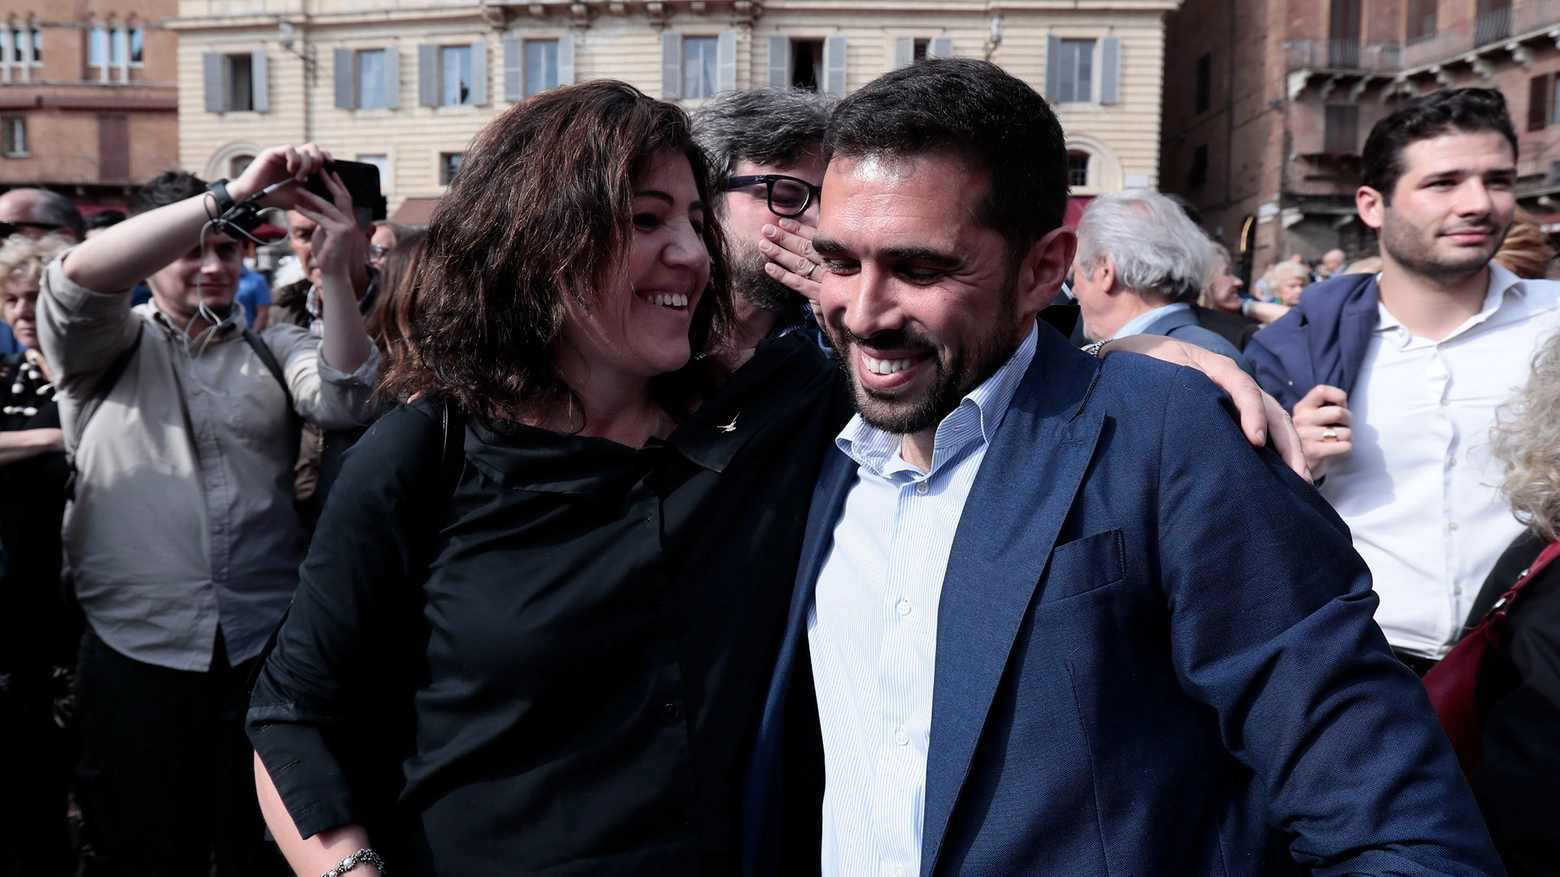 L’onorevole Francesco Michelotti, FdI, abbracciato da Tiziana Nisini, deputata Lega